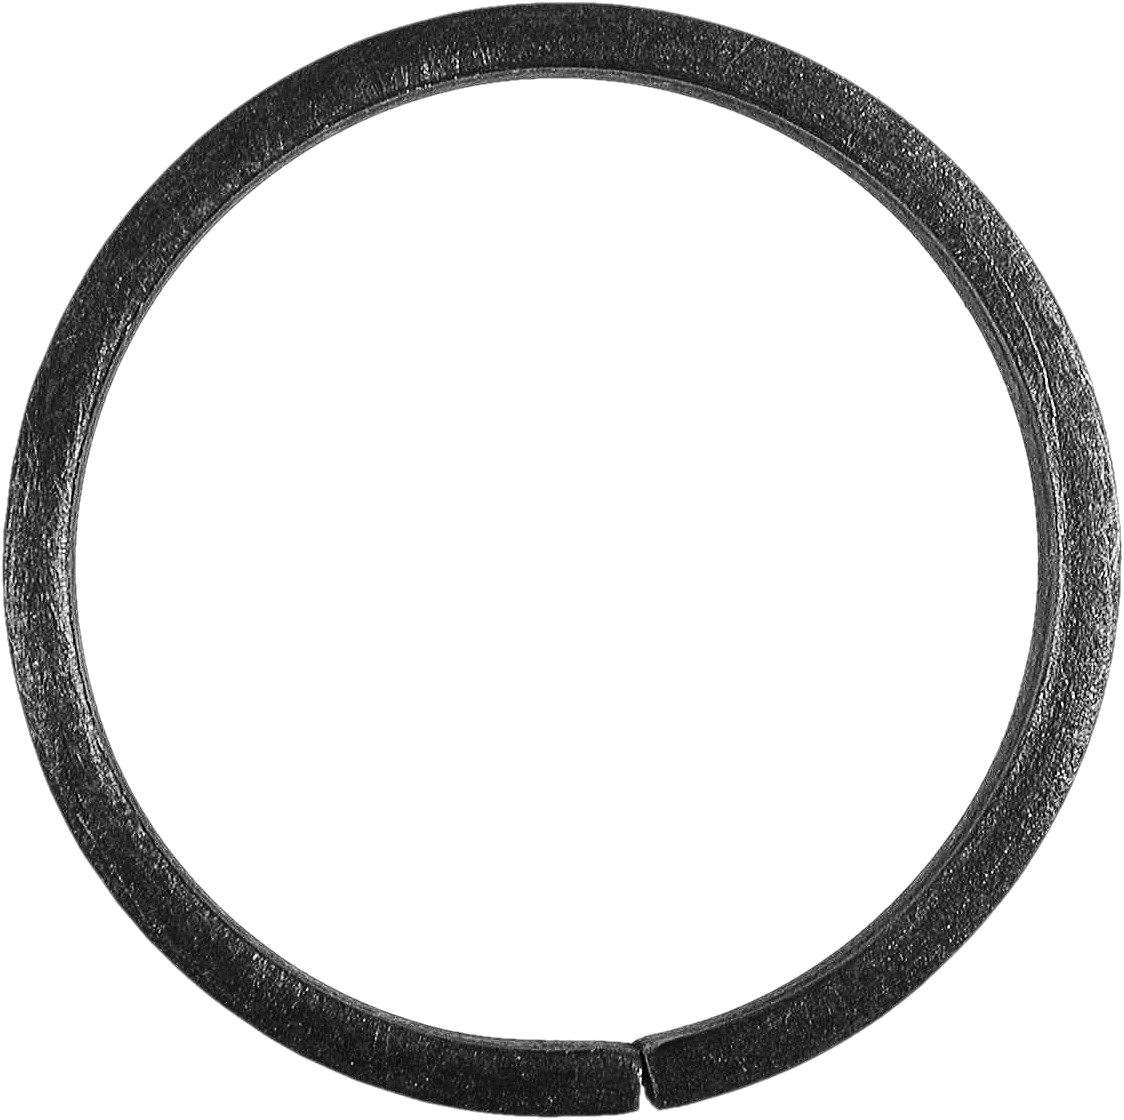 Cercle d'un diamètre de 100mm.